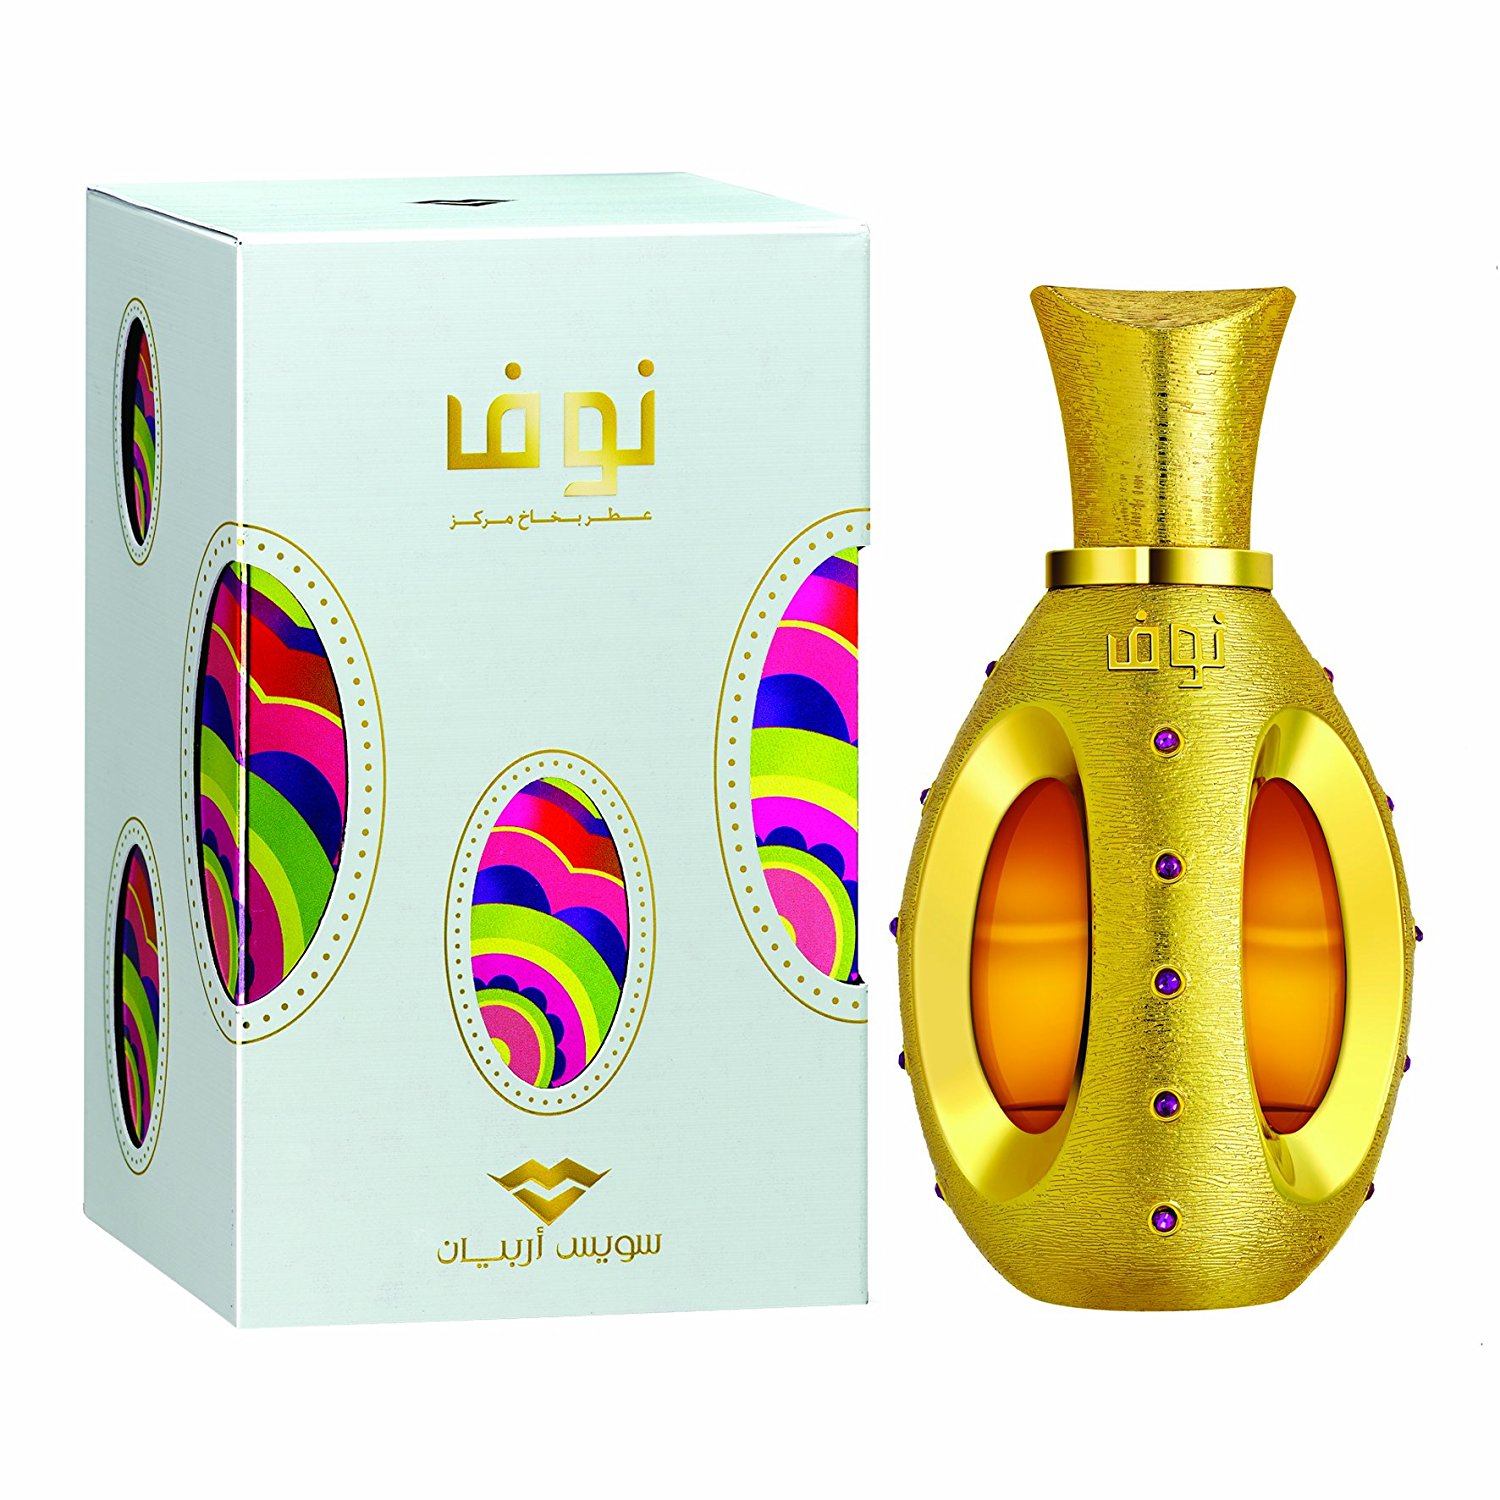 Nouf by Swiss Arabian Perfumes Eau De Parfum 50ml: Amazon.co.uk: Beauty